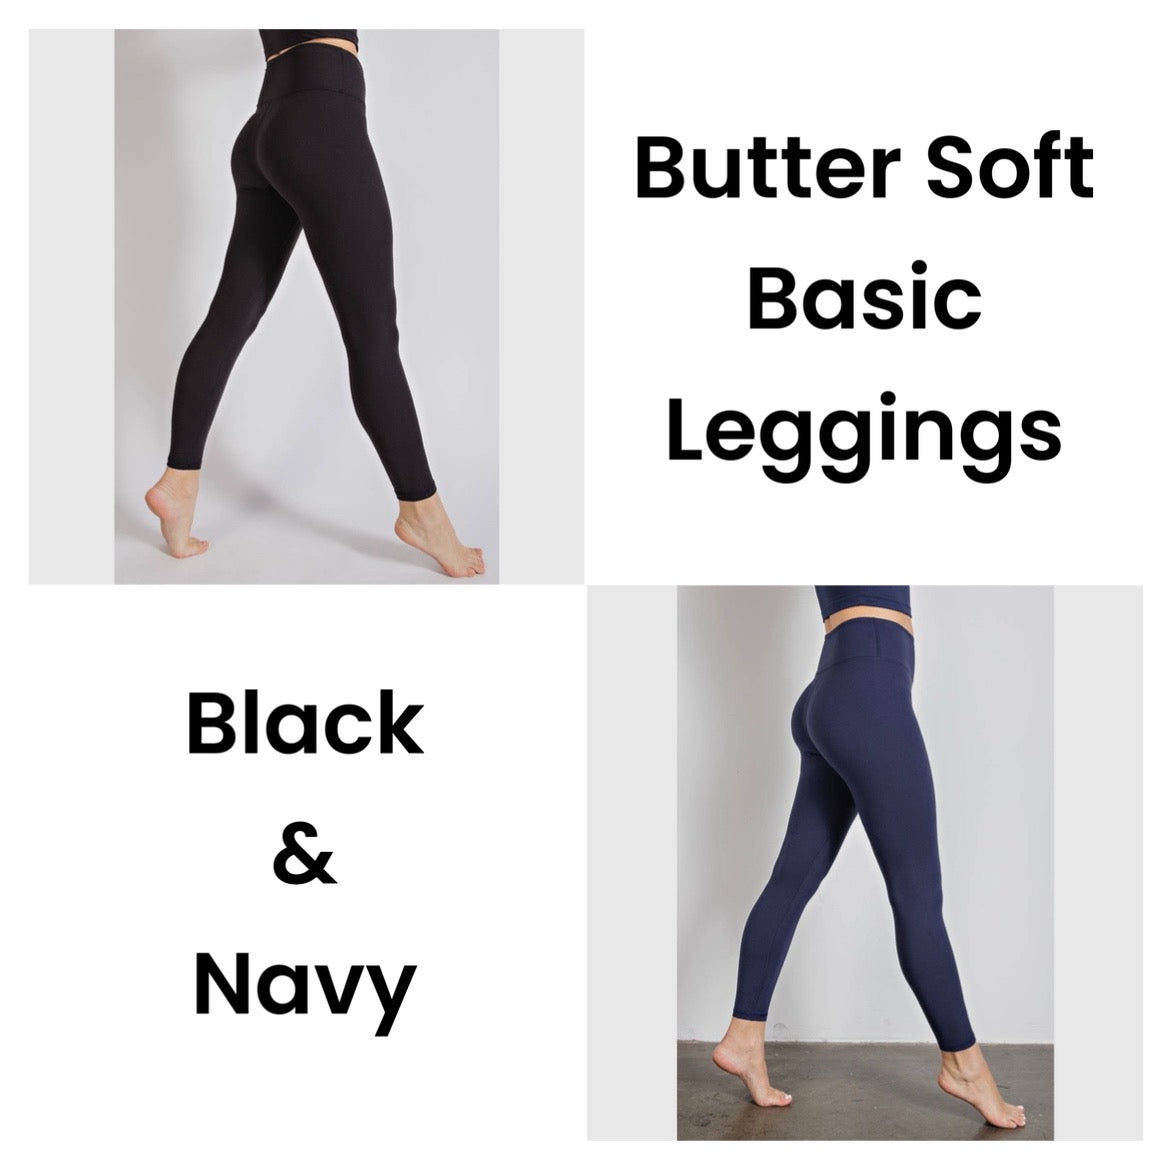 Butter Soft Basic Full Length Leggings - Black & Navy!